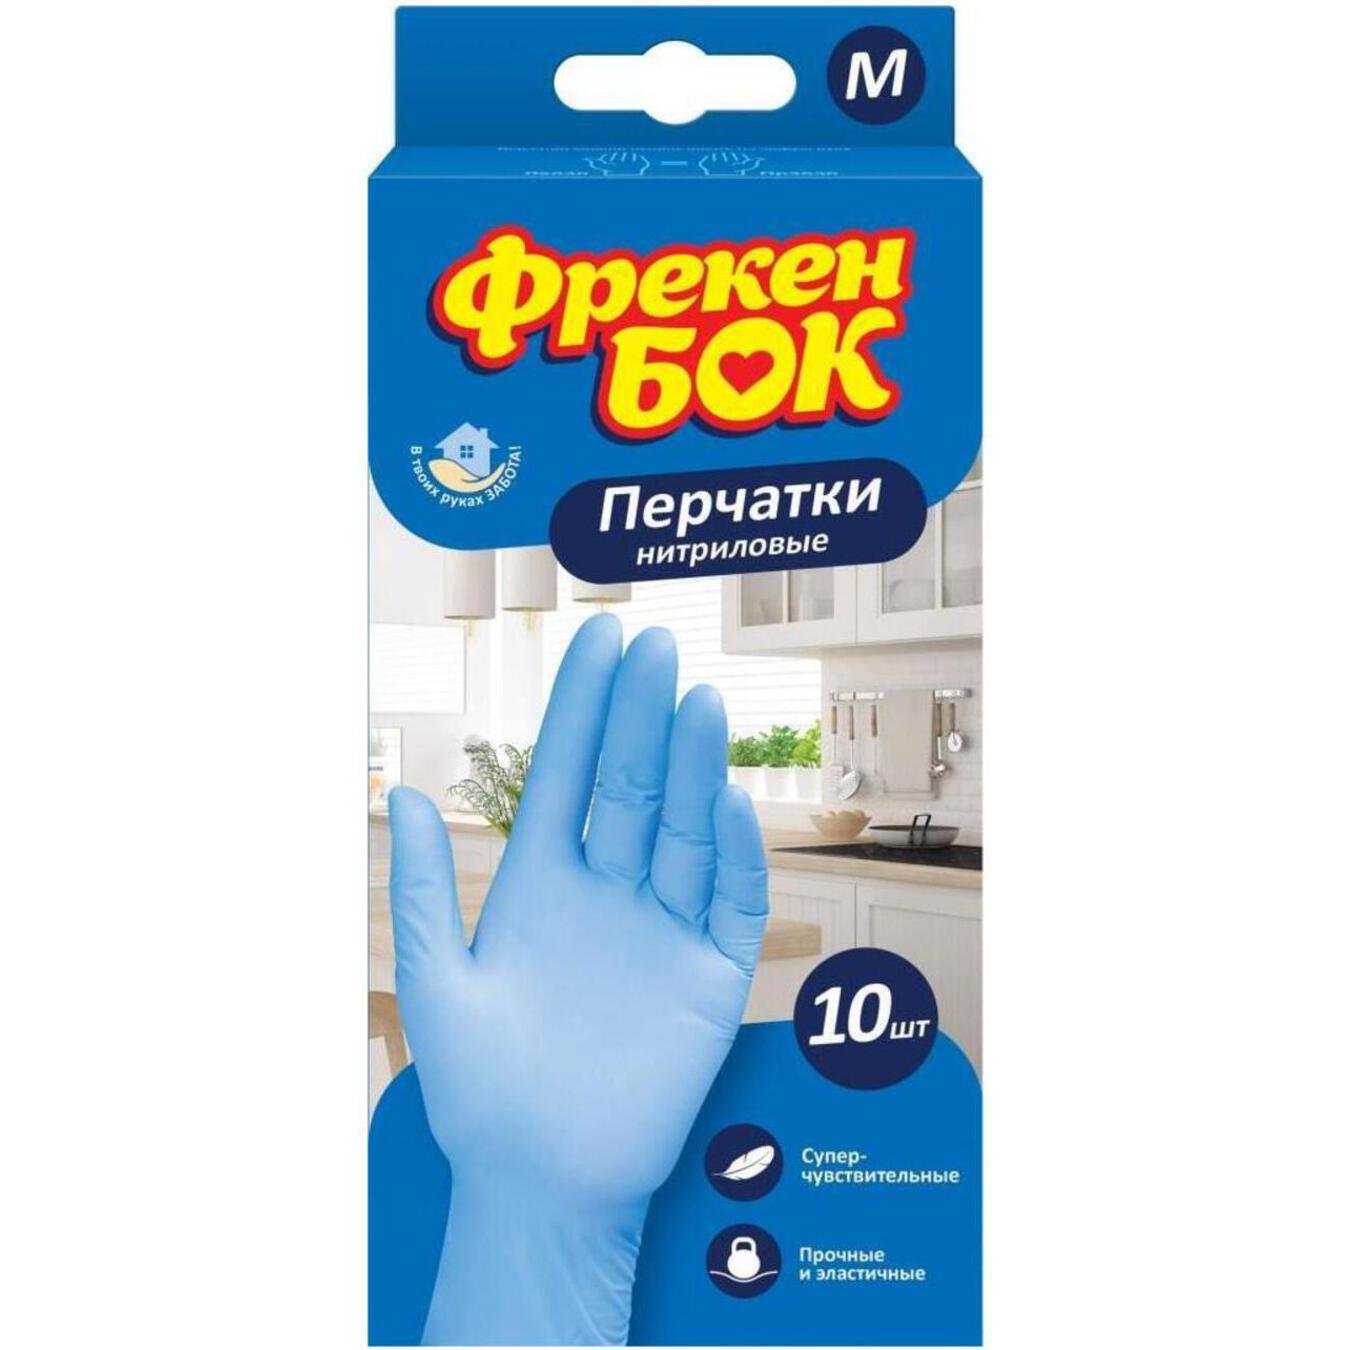 Freken Bok Nitrile Disposable Gloves Size M 10pcs